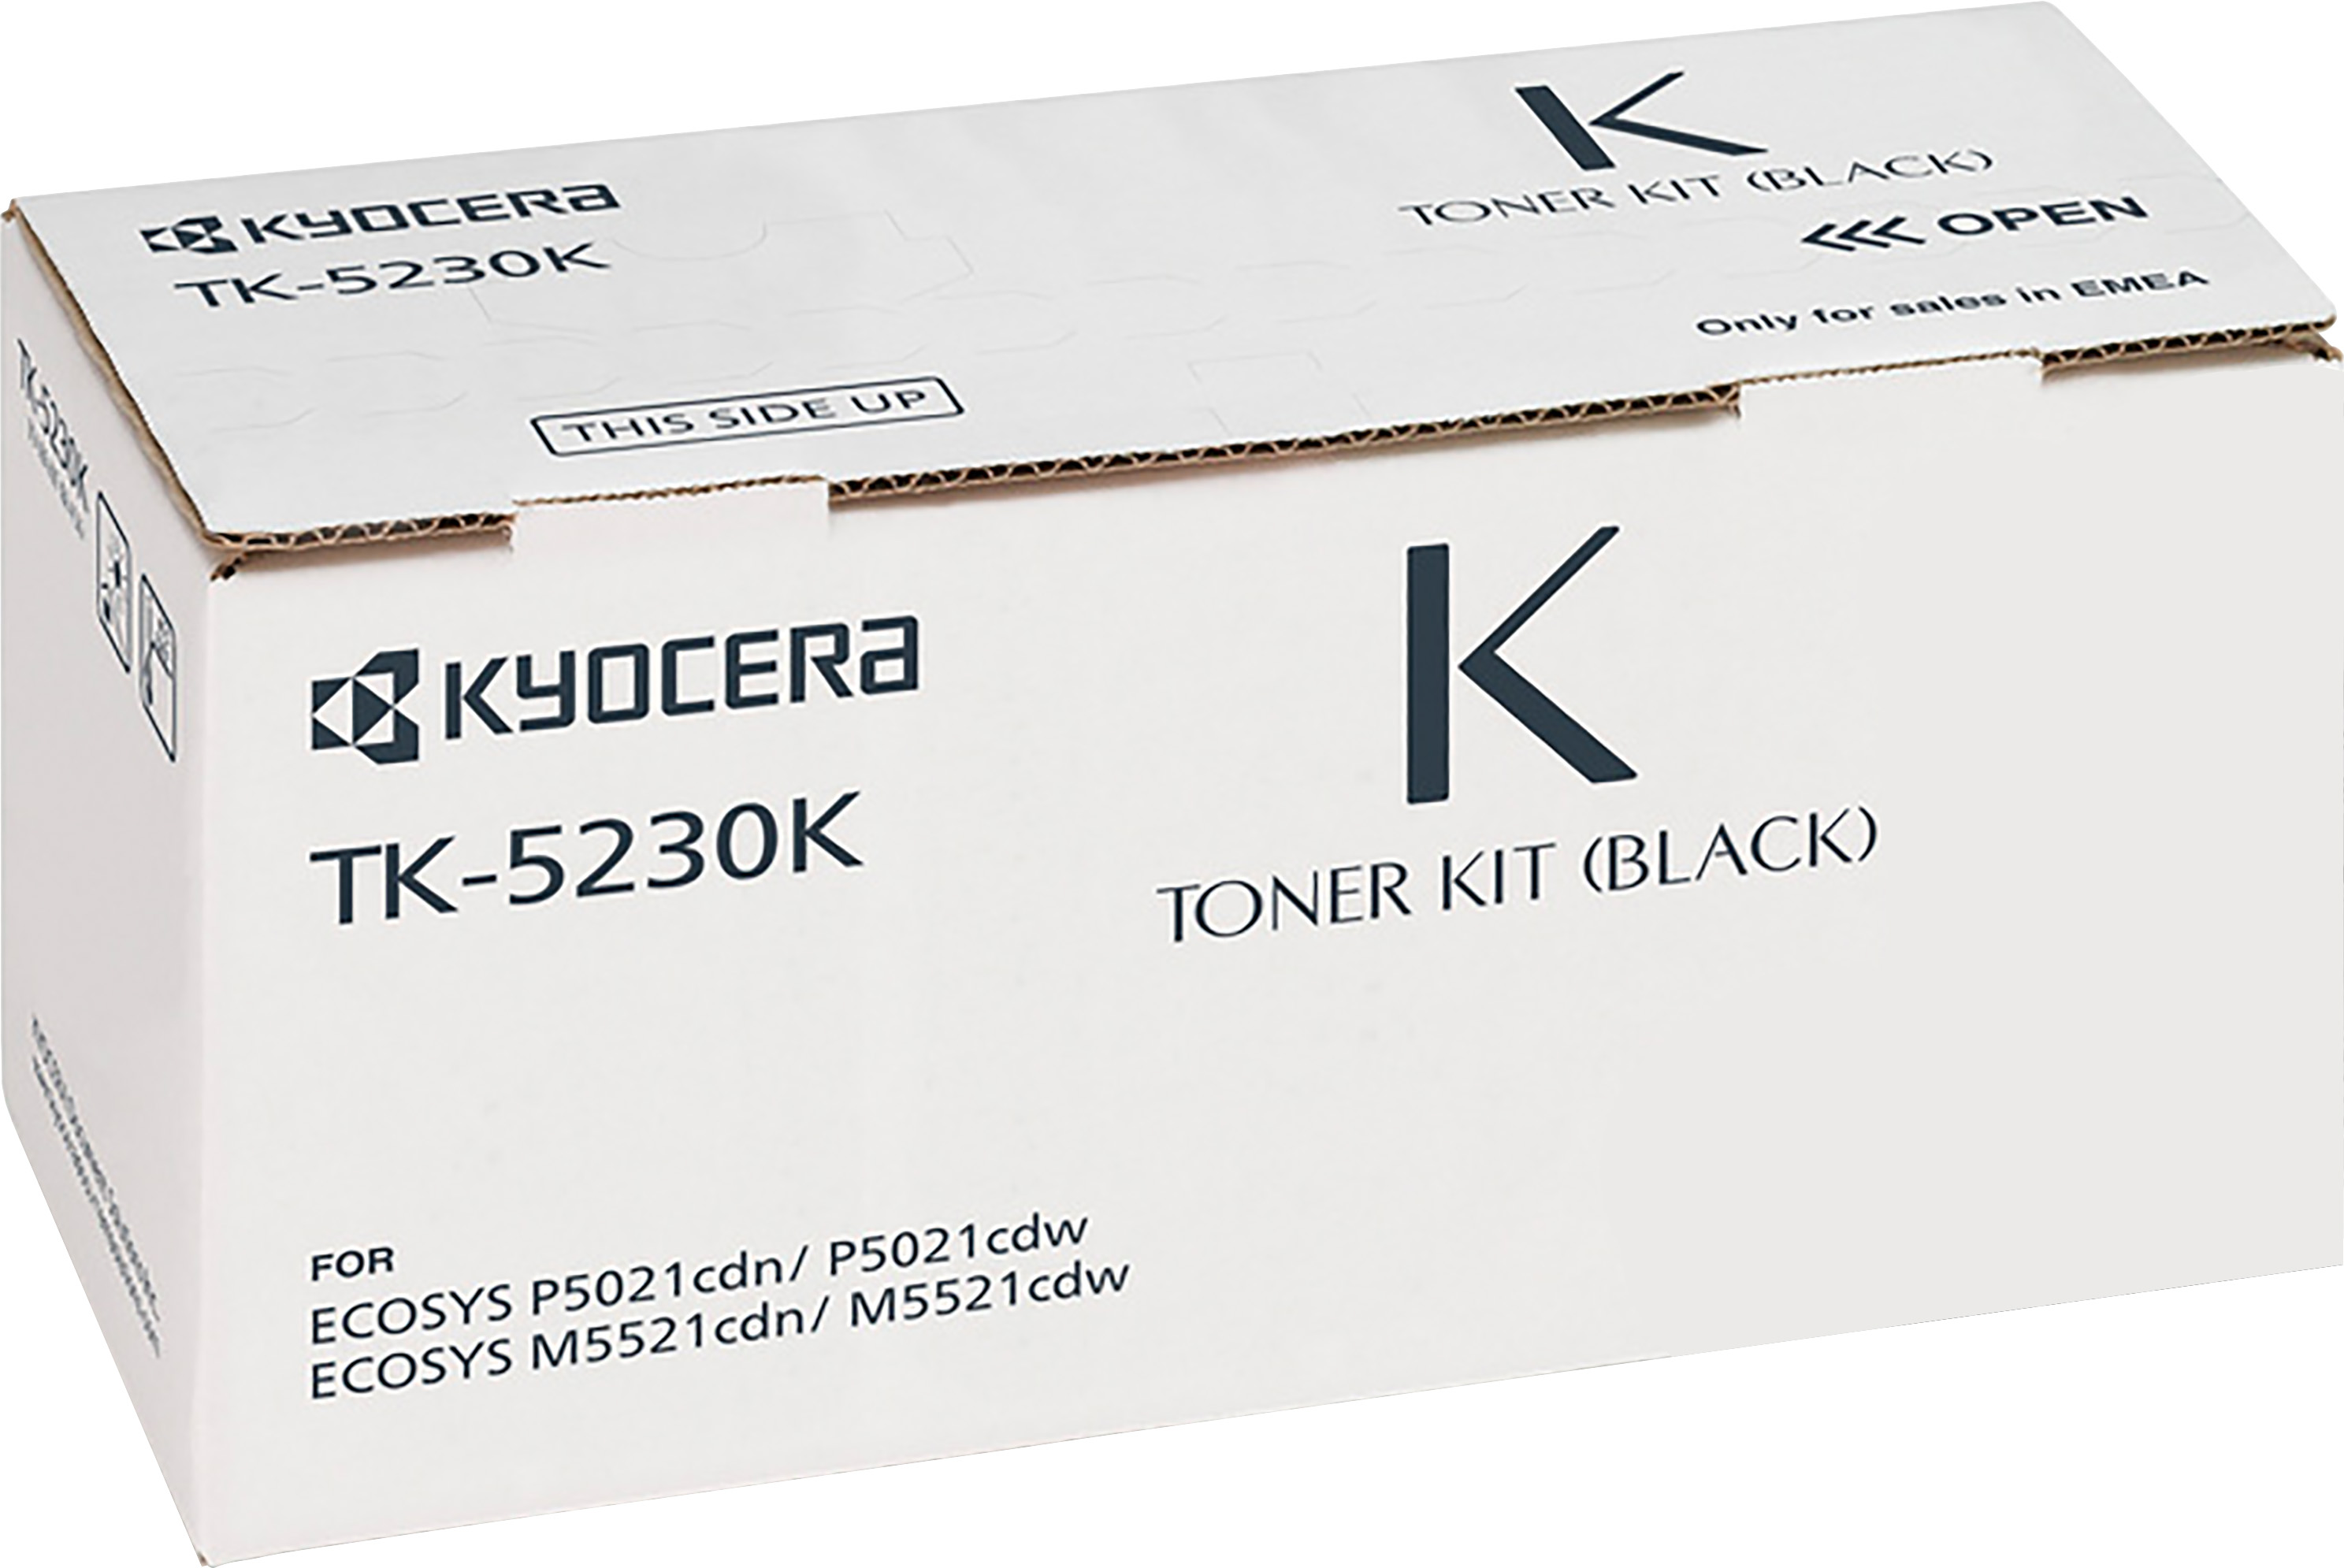 Kyocera Lasertoner TK-5230K schwarz 2.600 Seiten